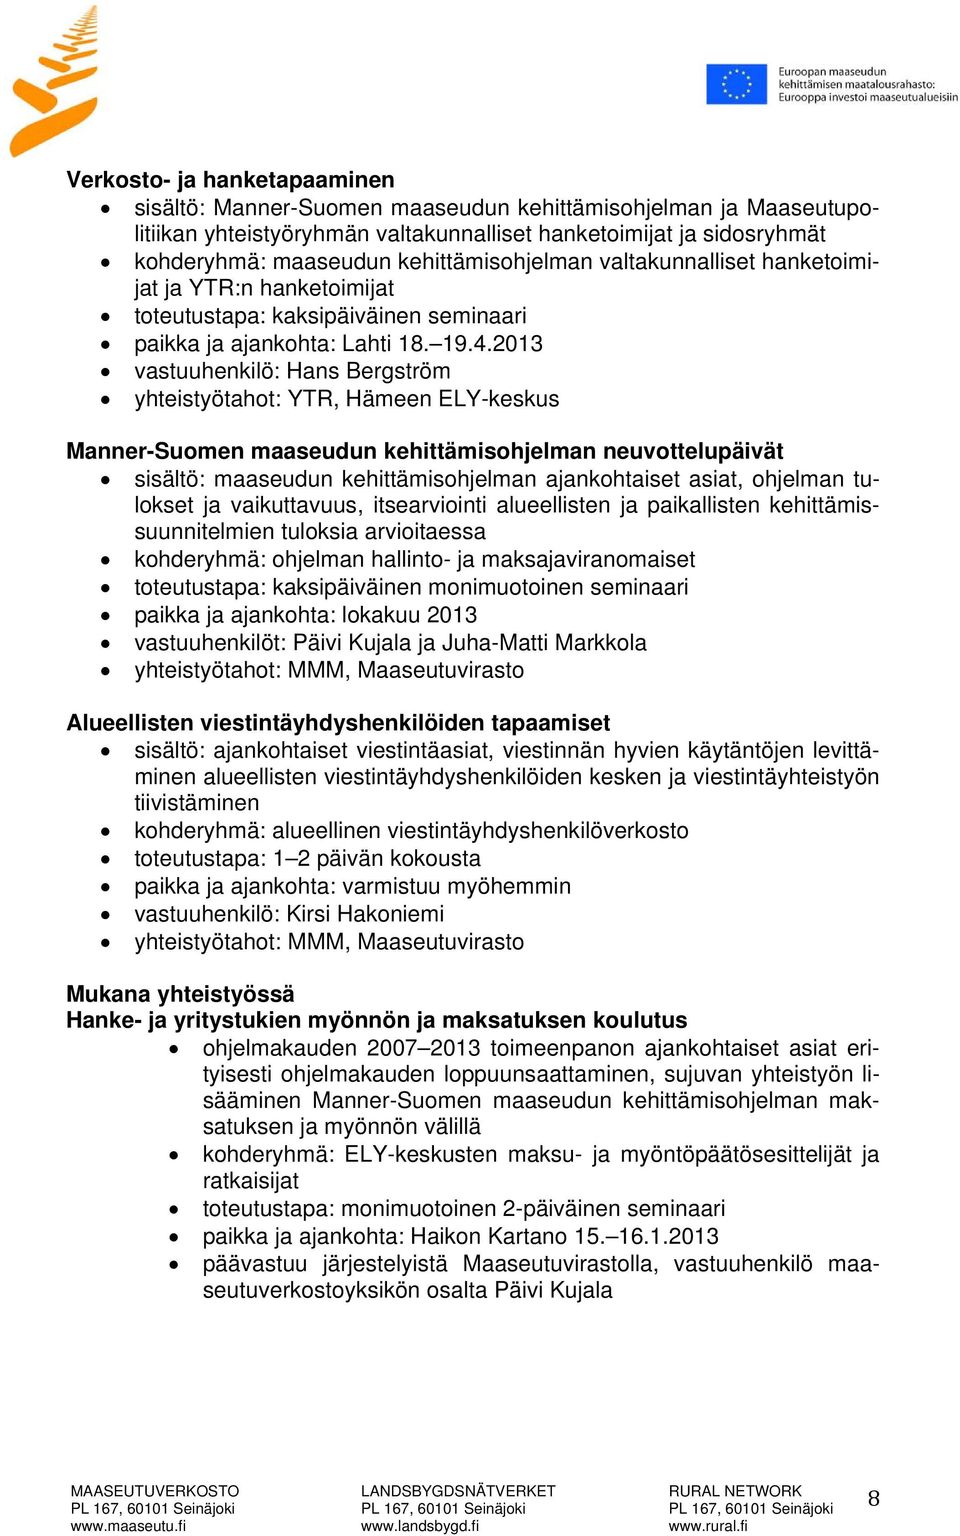 2013 vastuuhenkilö: Hans Bergström yhteistyötahot: YTR, Hämeen ELY-keskus Manner-Suomen maaseudun kehittämisohjelman neuvottelupäivät sisältö: maaseudun kehittämisohjelman ajankohtaiset asiat,